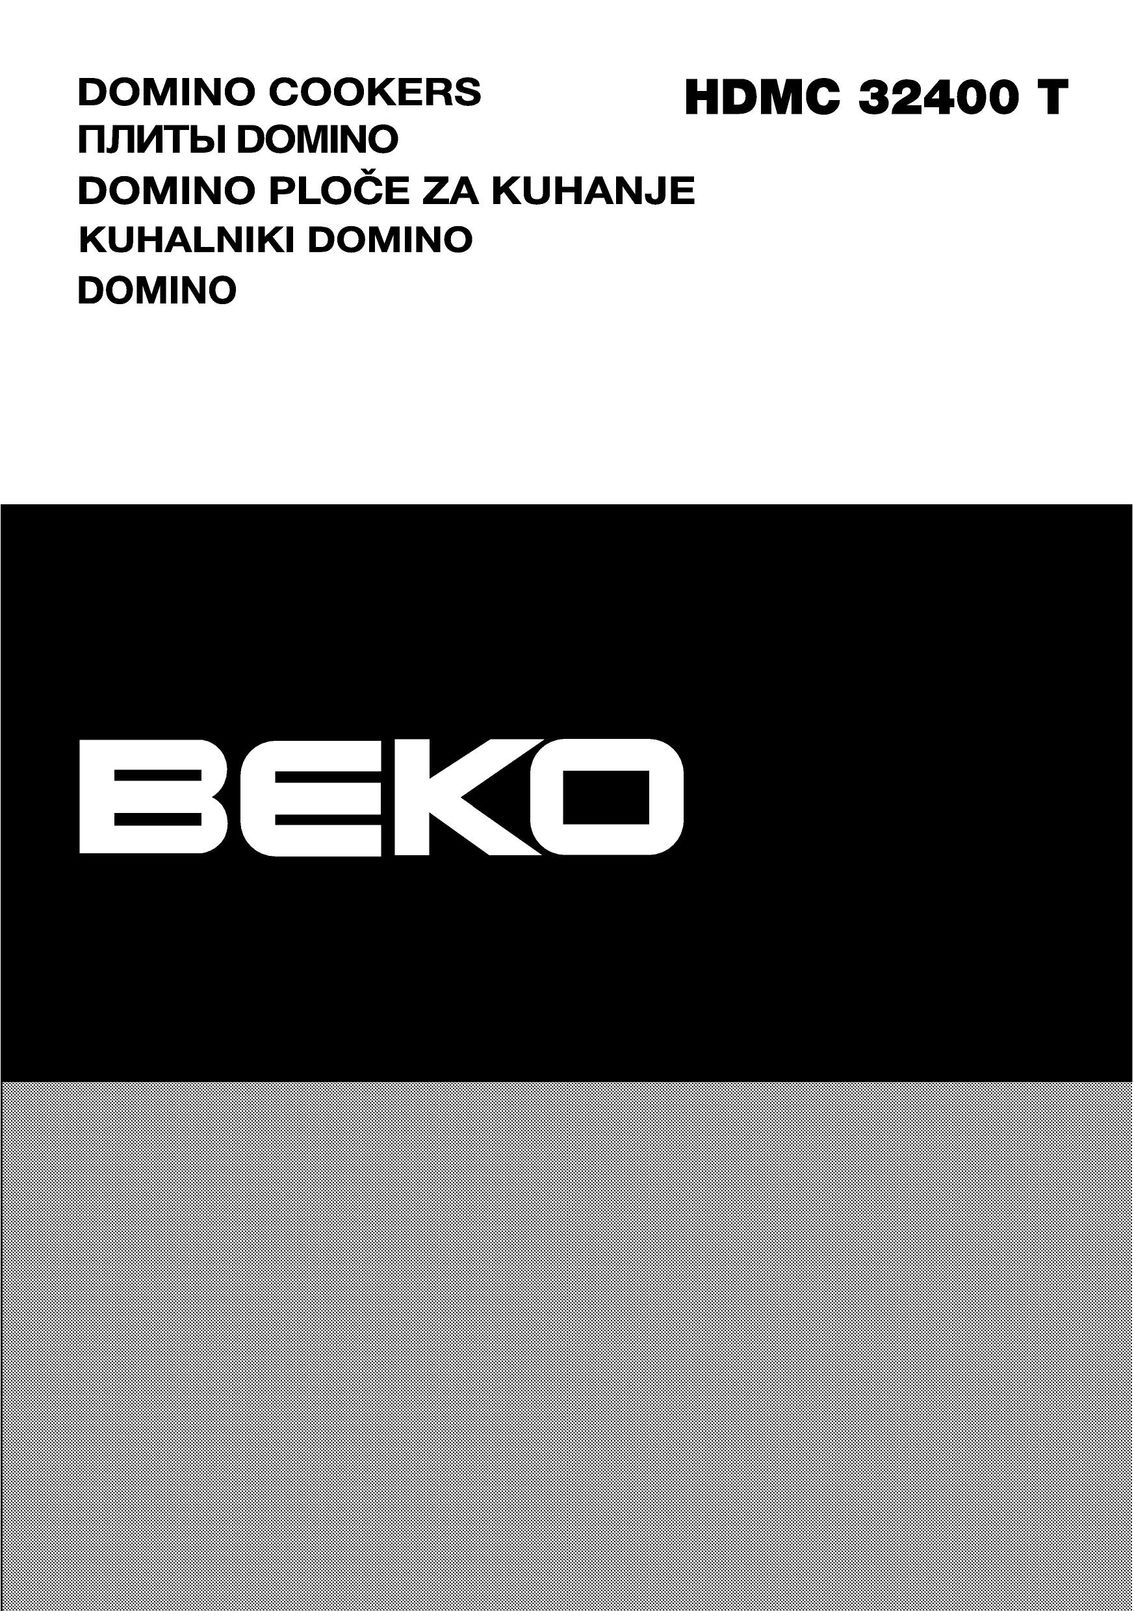 Beko HDMC 32400 T Cooktop User Manual